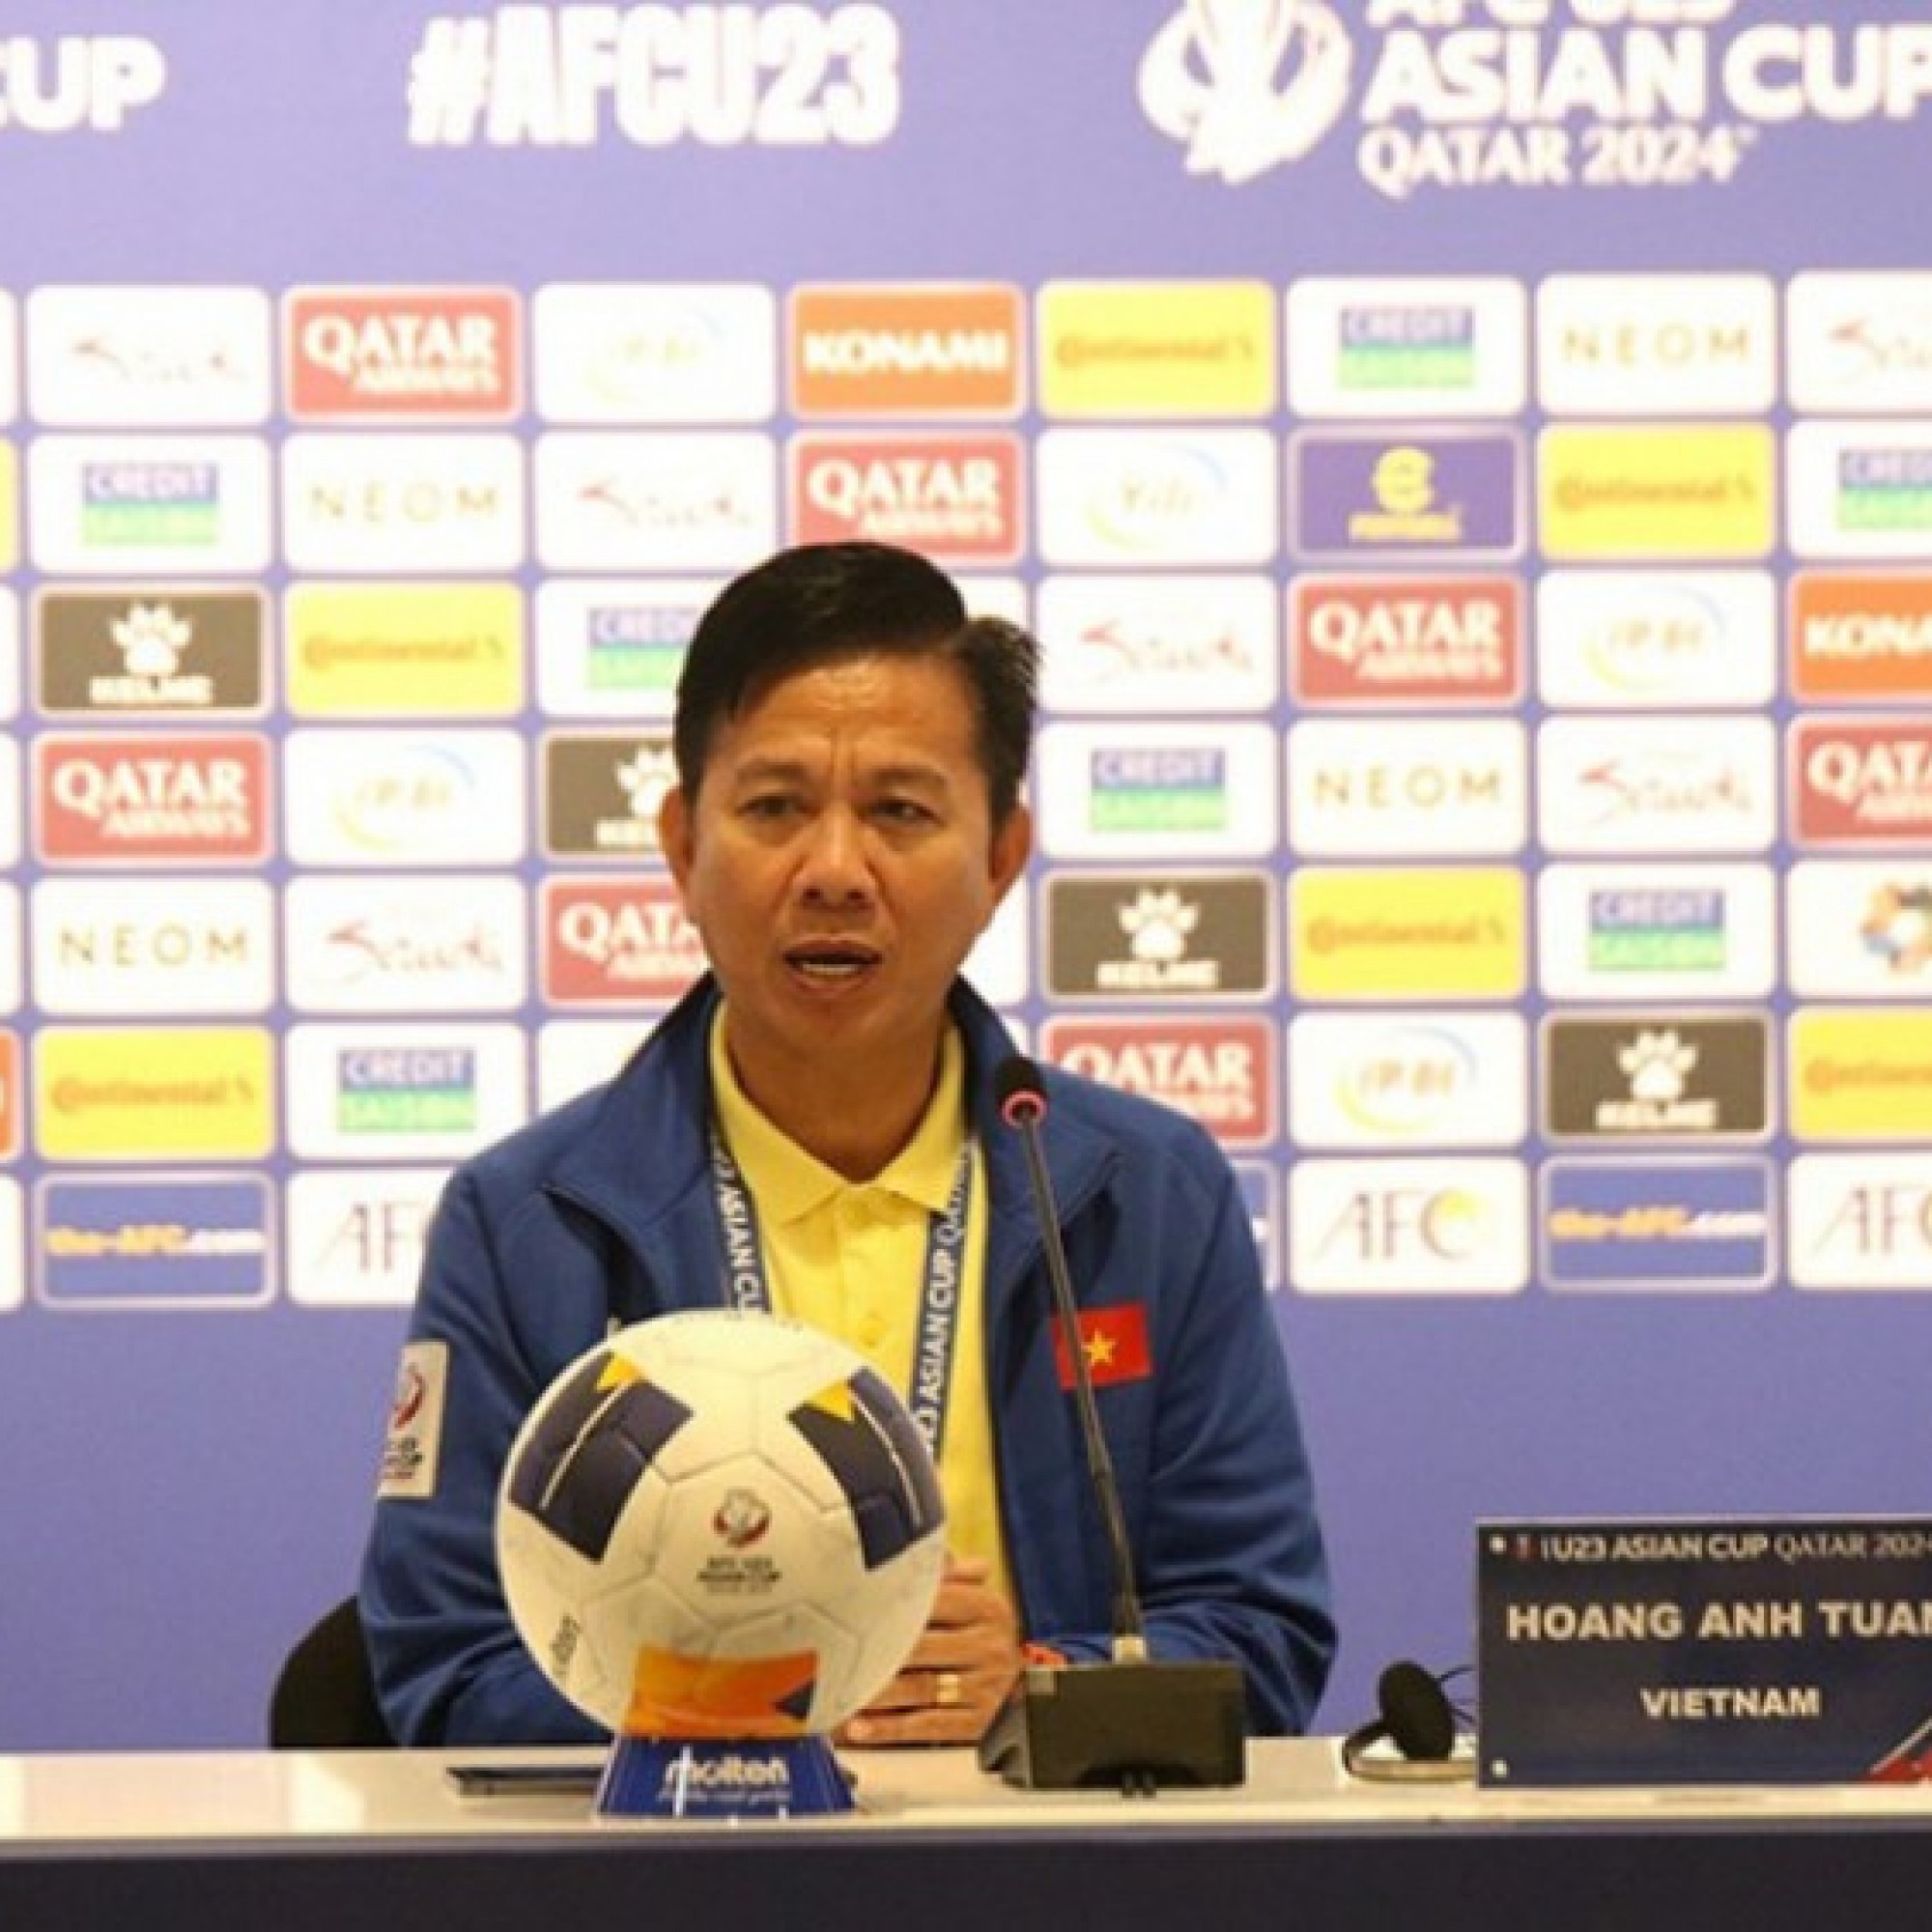  - Trực tiếp họp báo U23 Việt Nam - U23 Iraq: HLV Hoàng Anh Tuấn nói gì sau trận?